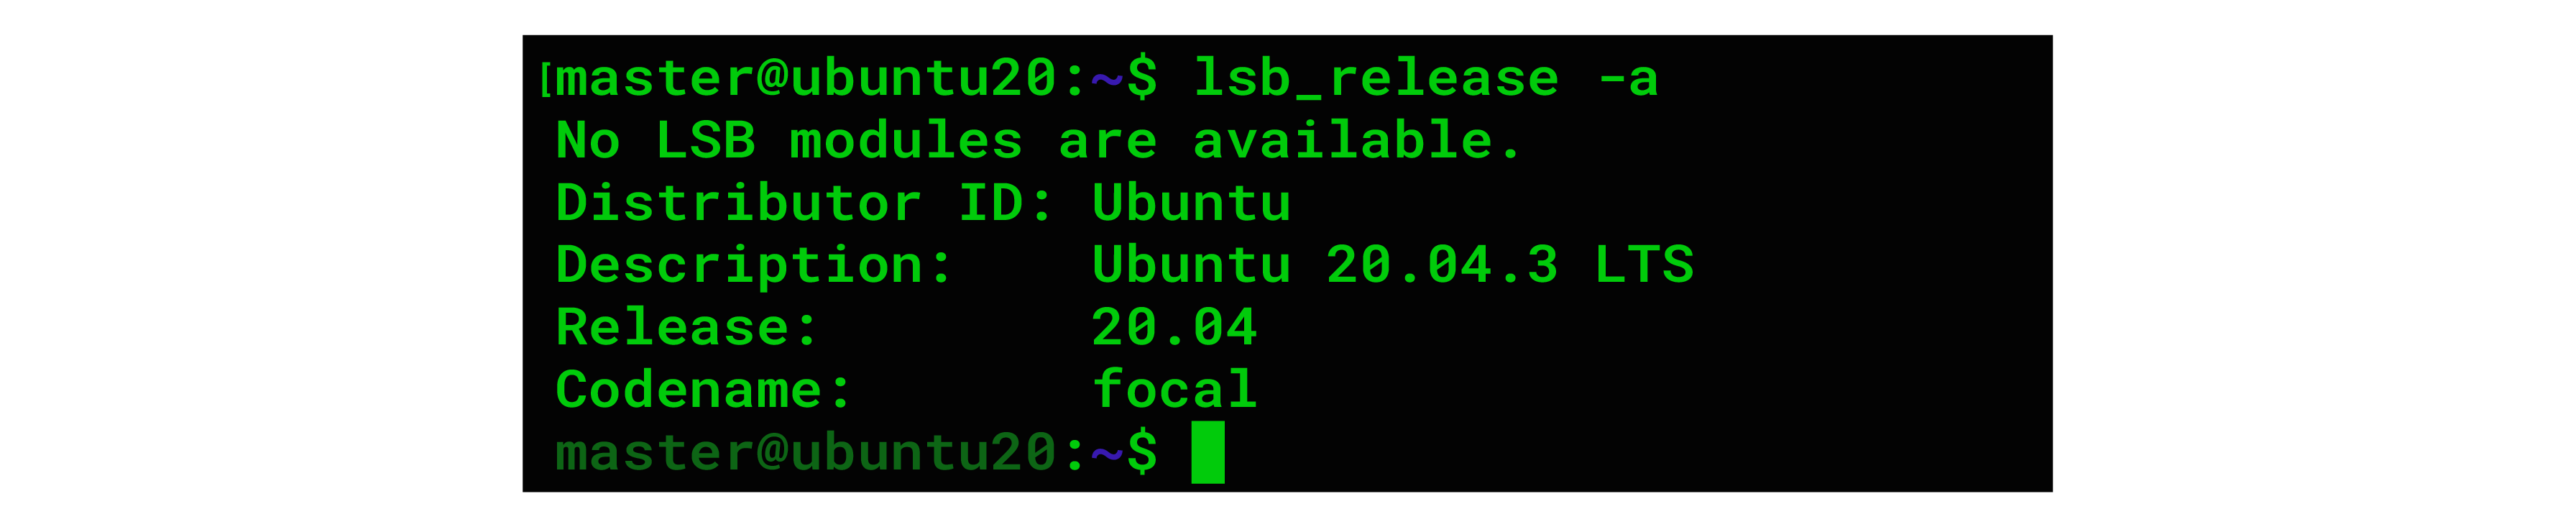 如何在 Ubuntu 2.4 上安装 Magento 20.04